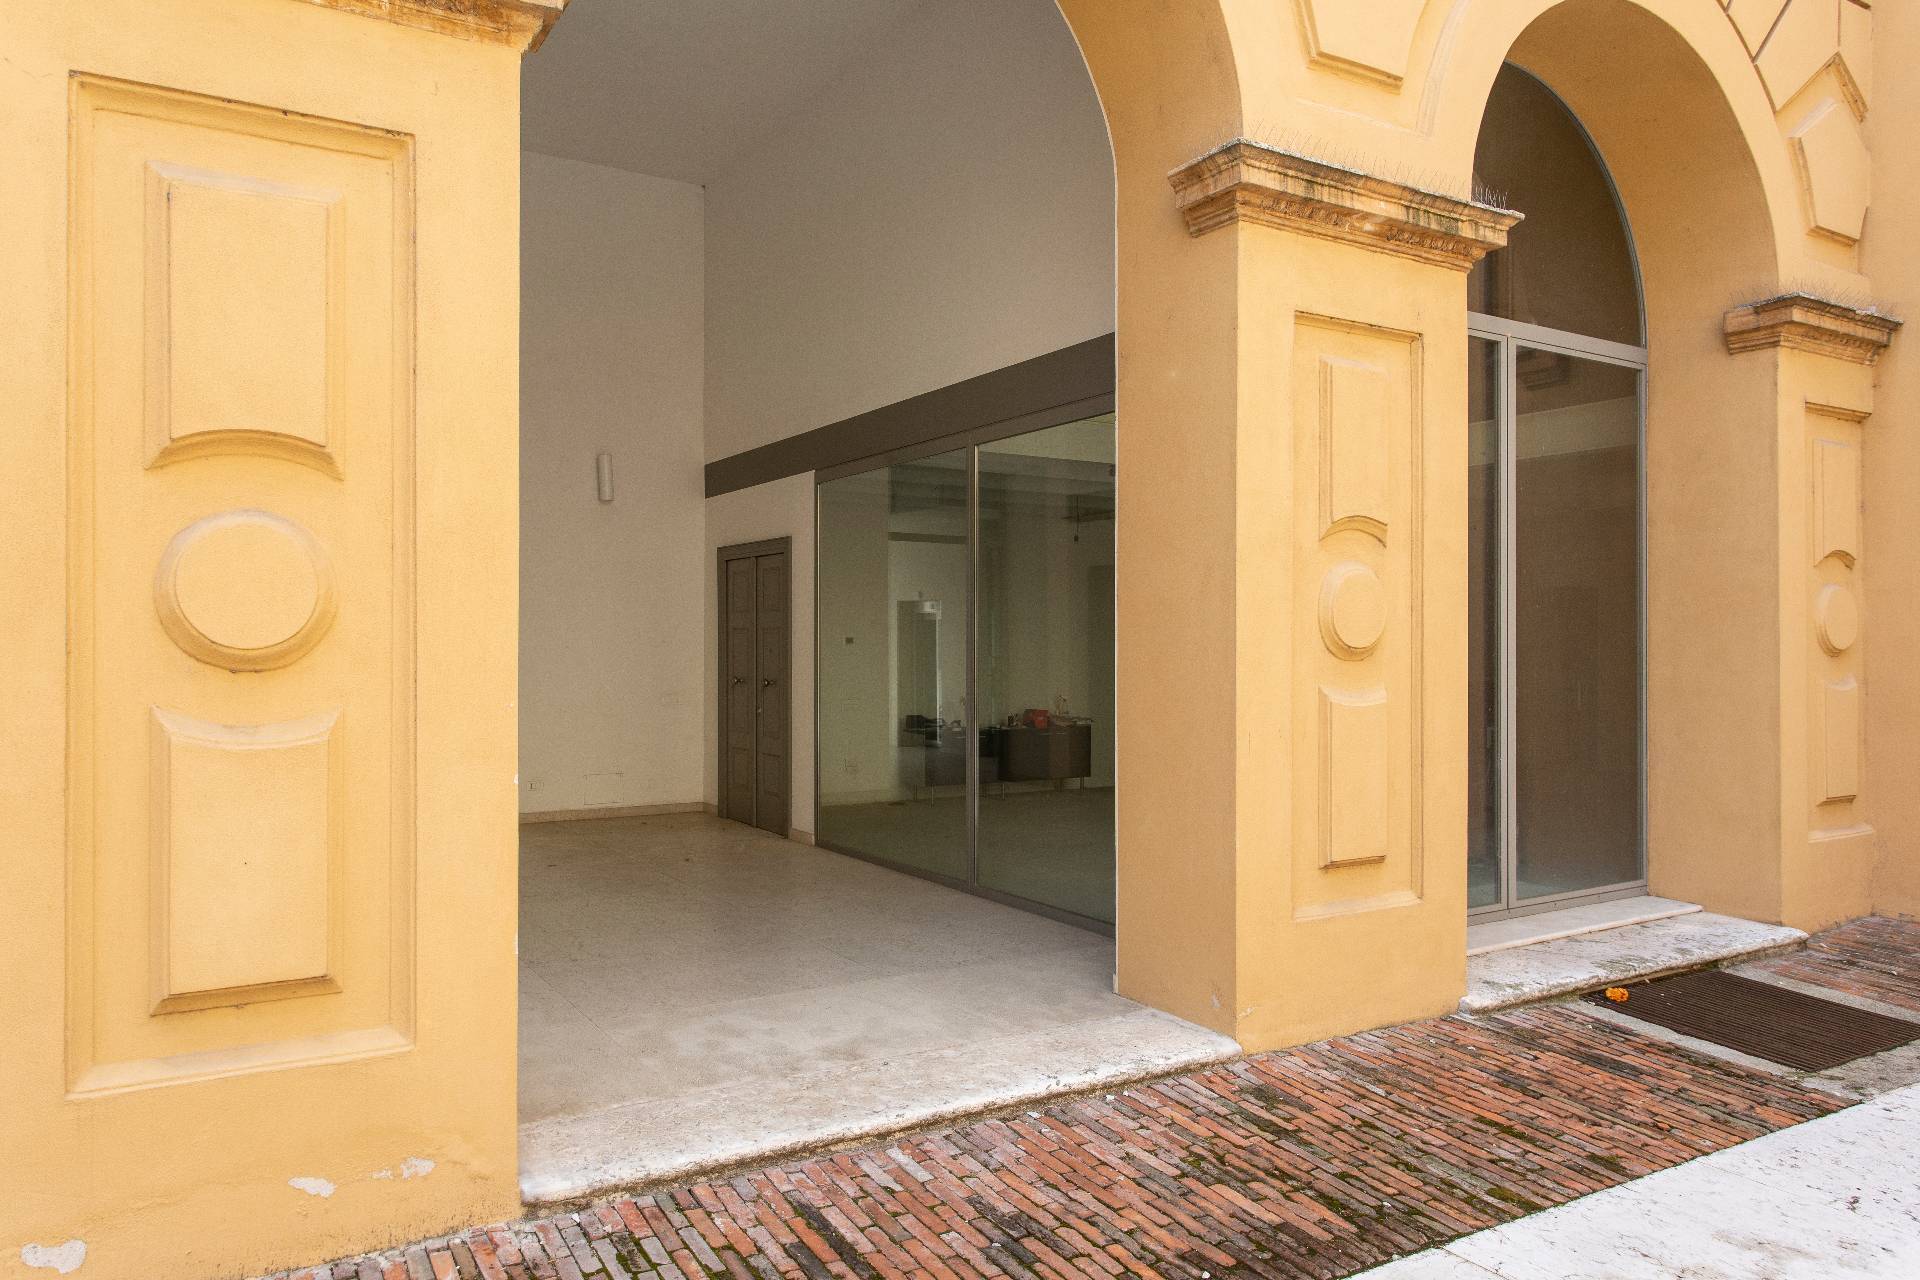 Ufficio / Studio in vendita a Mantova, 9999 locali, zona Località: Centrostorico, prezzo € 320.000 | PortaleAgenzieImmobiliari.it